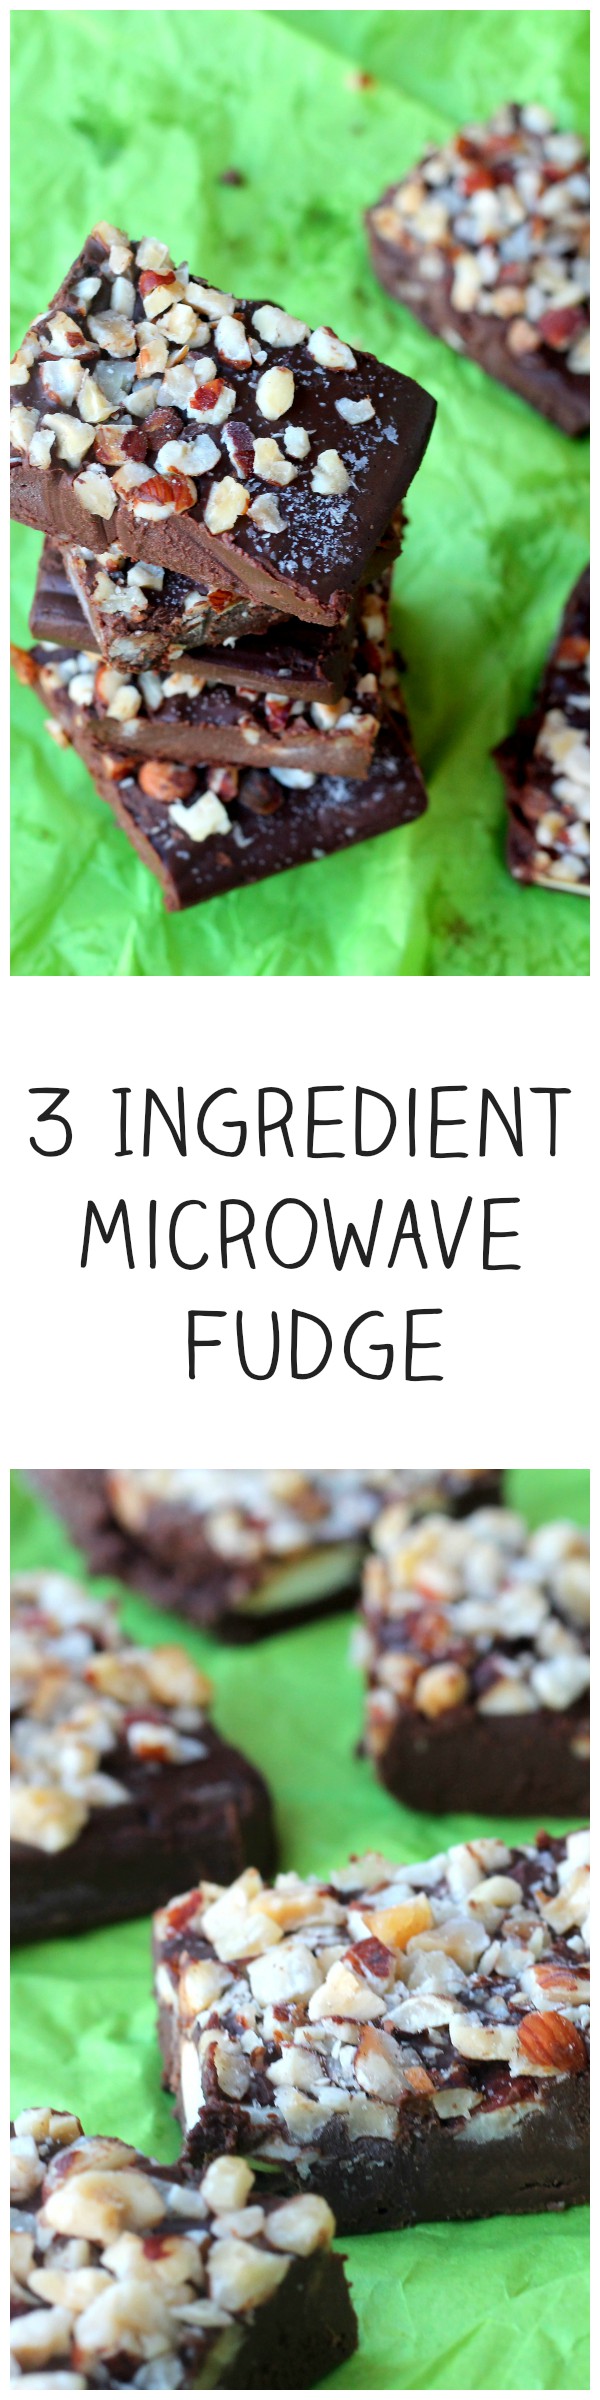 3 Ingredient Microwave Fudge